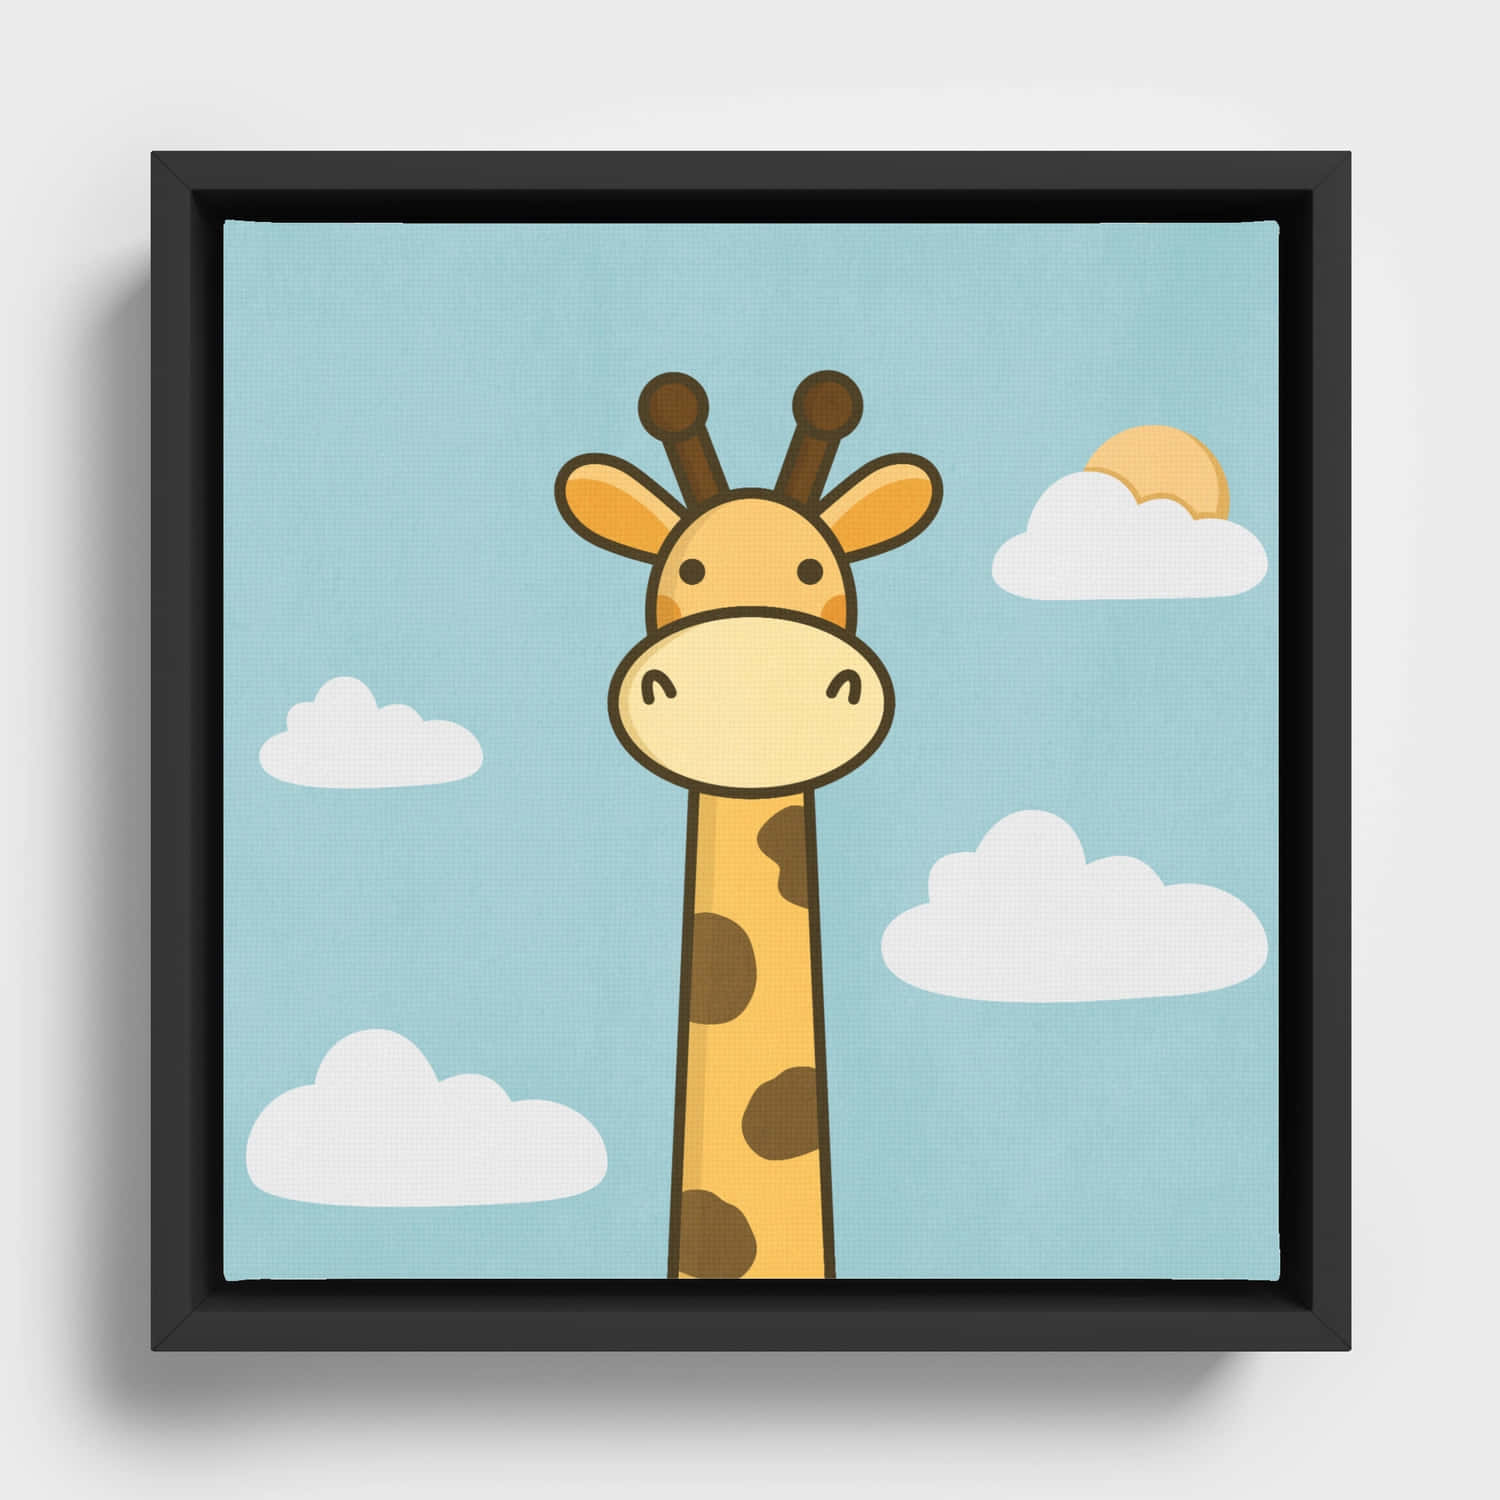 Adorable Kawaii Giraffe with a Cute Smile Wallpaper